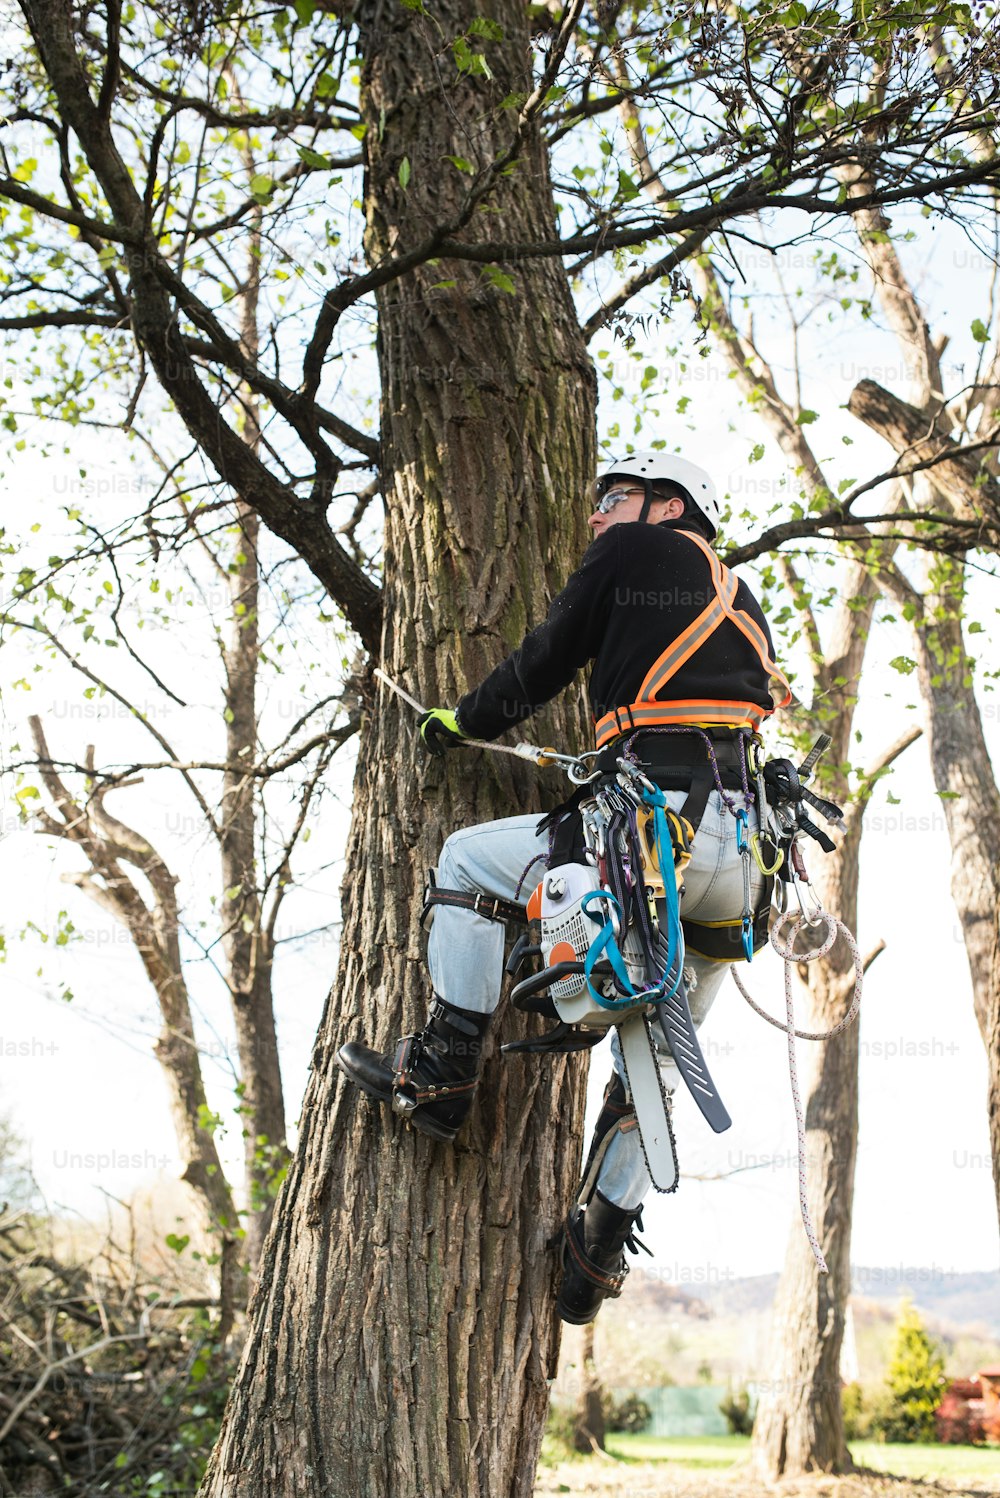 Boscaiolo con sega e imbracatura per potare un albero. Un chirurgo arboreorifico, arboricoltore che si arrampica su un albero per ridurre e tagliare i suoi rami.